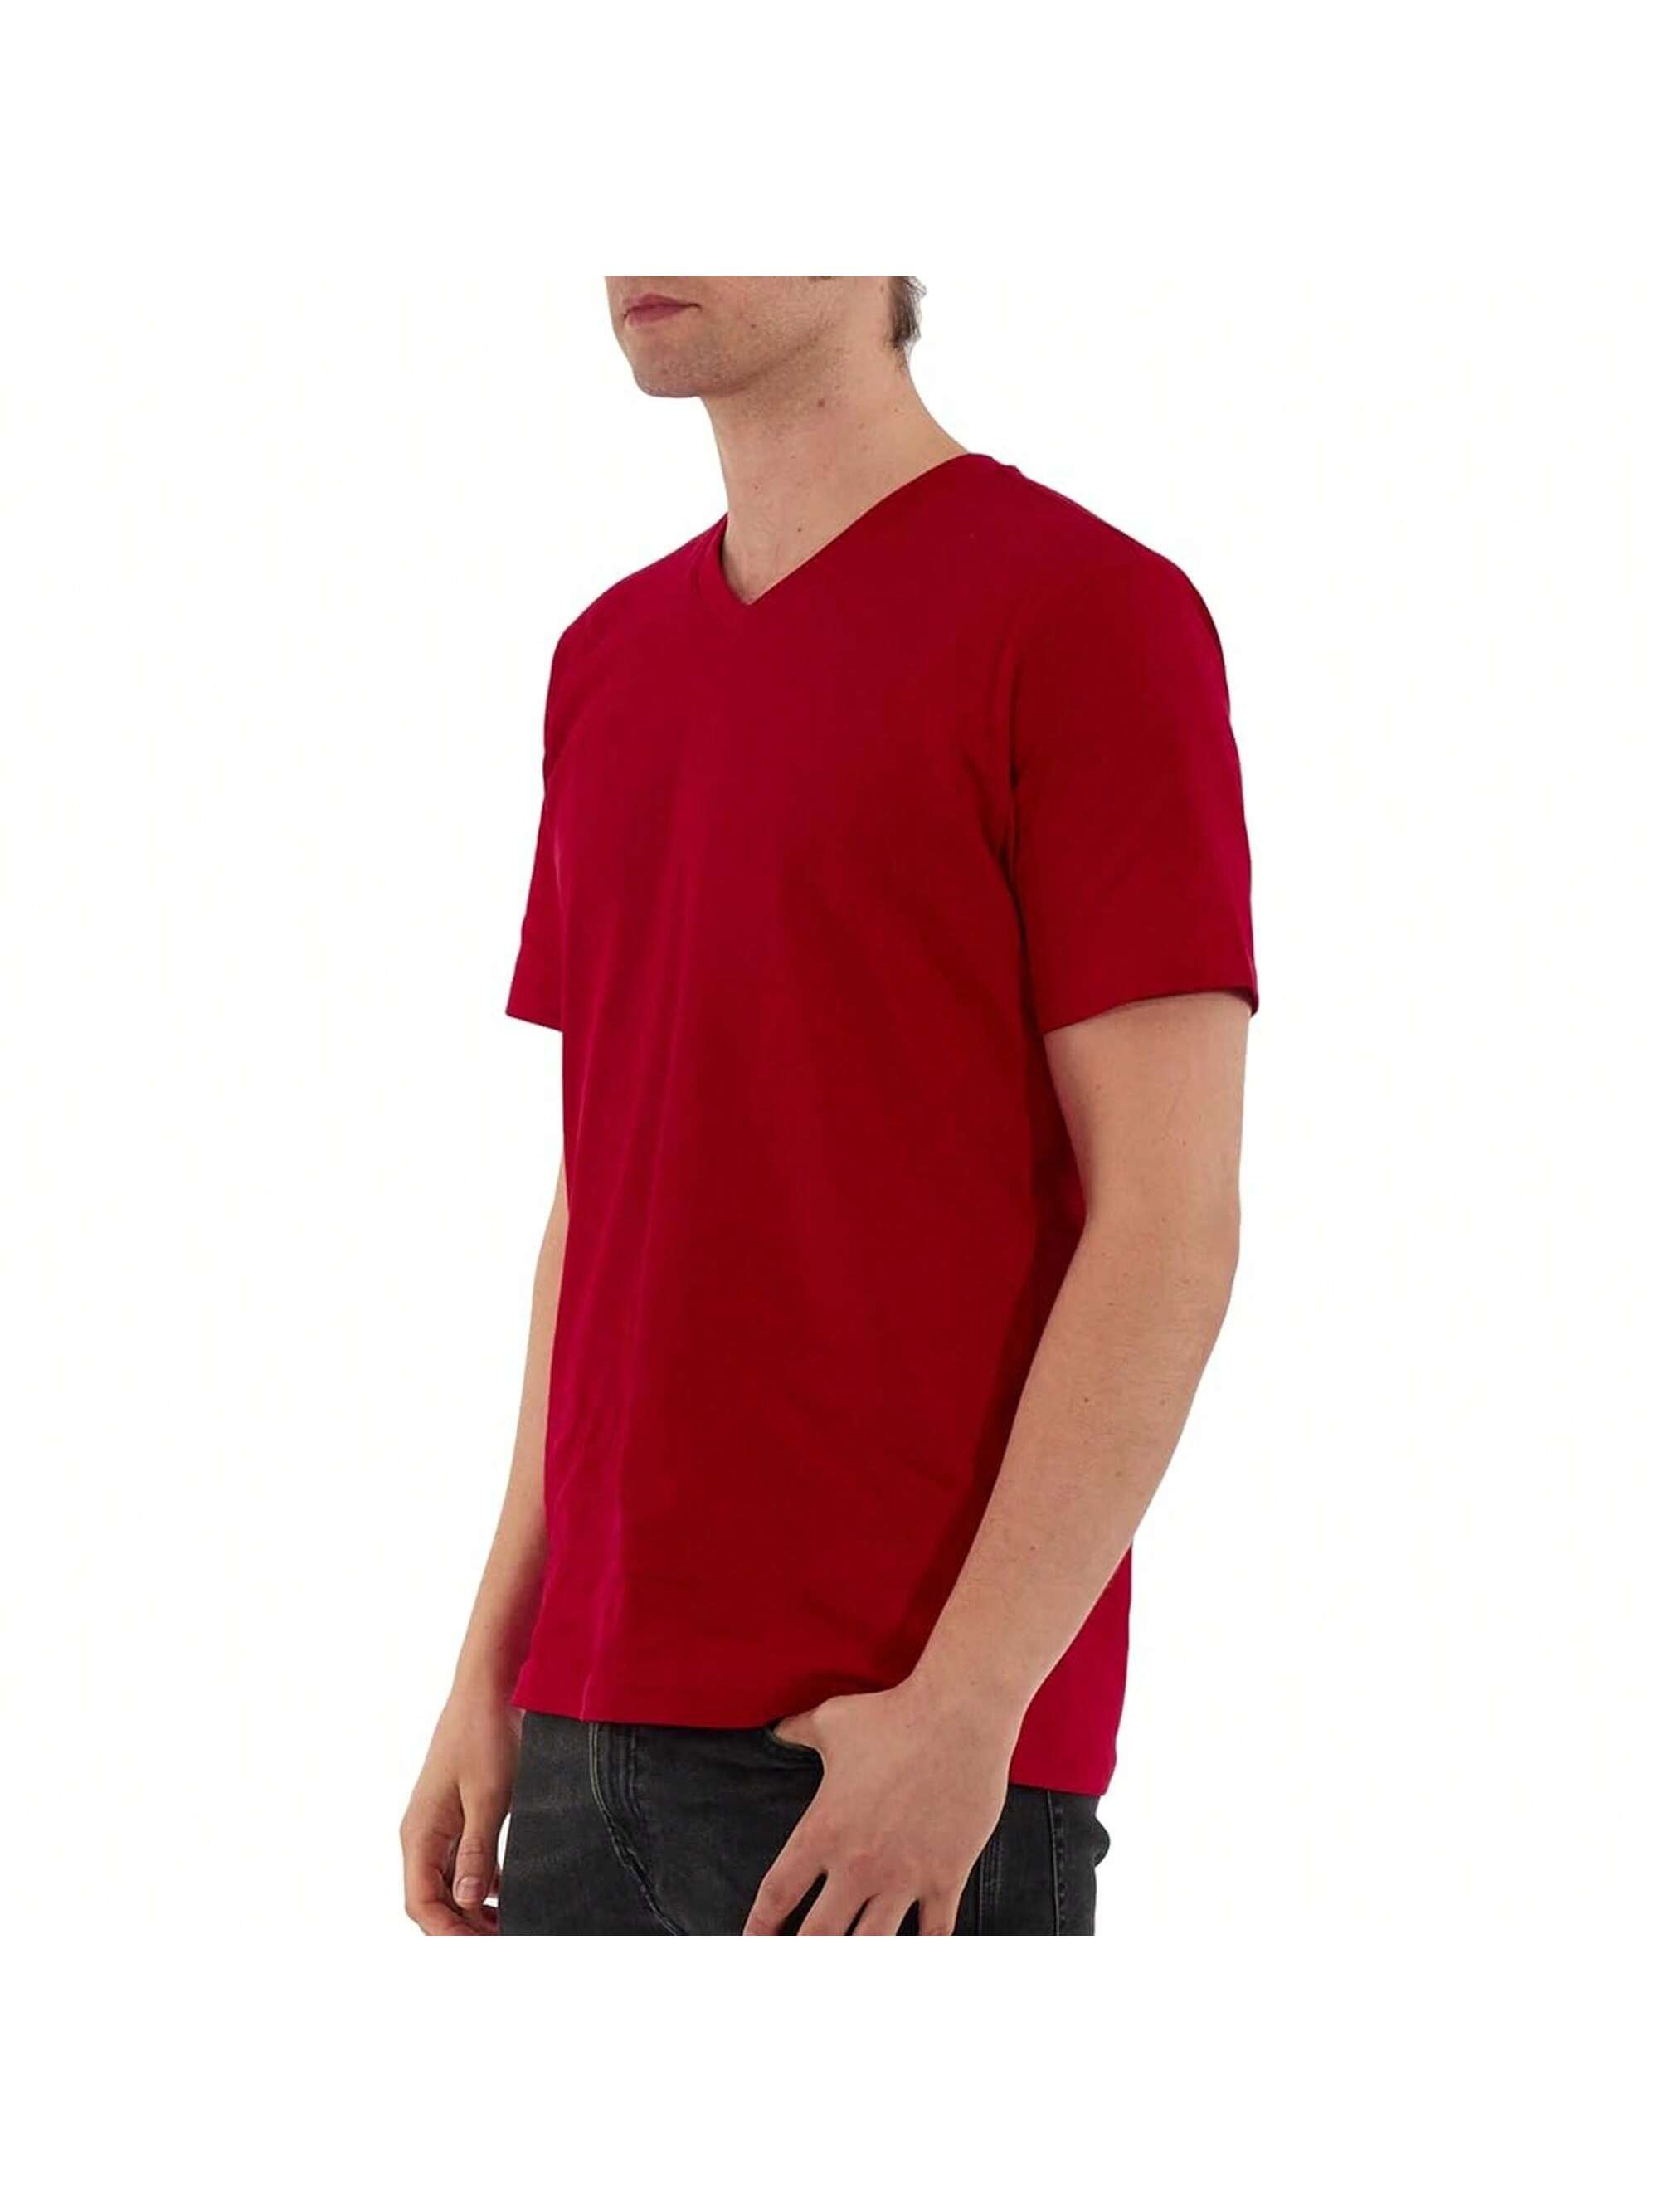 Мужская хлопковая футболка премиум-класса с v-образным вырезом Rich Cotton BLK-M, красный футболка мужская с v обр вырезом victory 150 темно синяя размер m